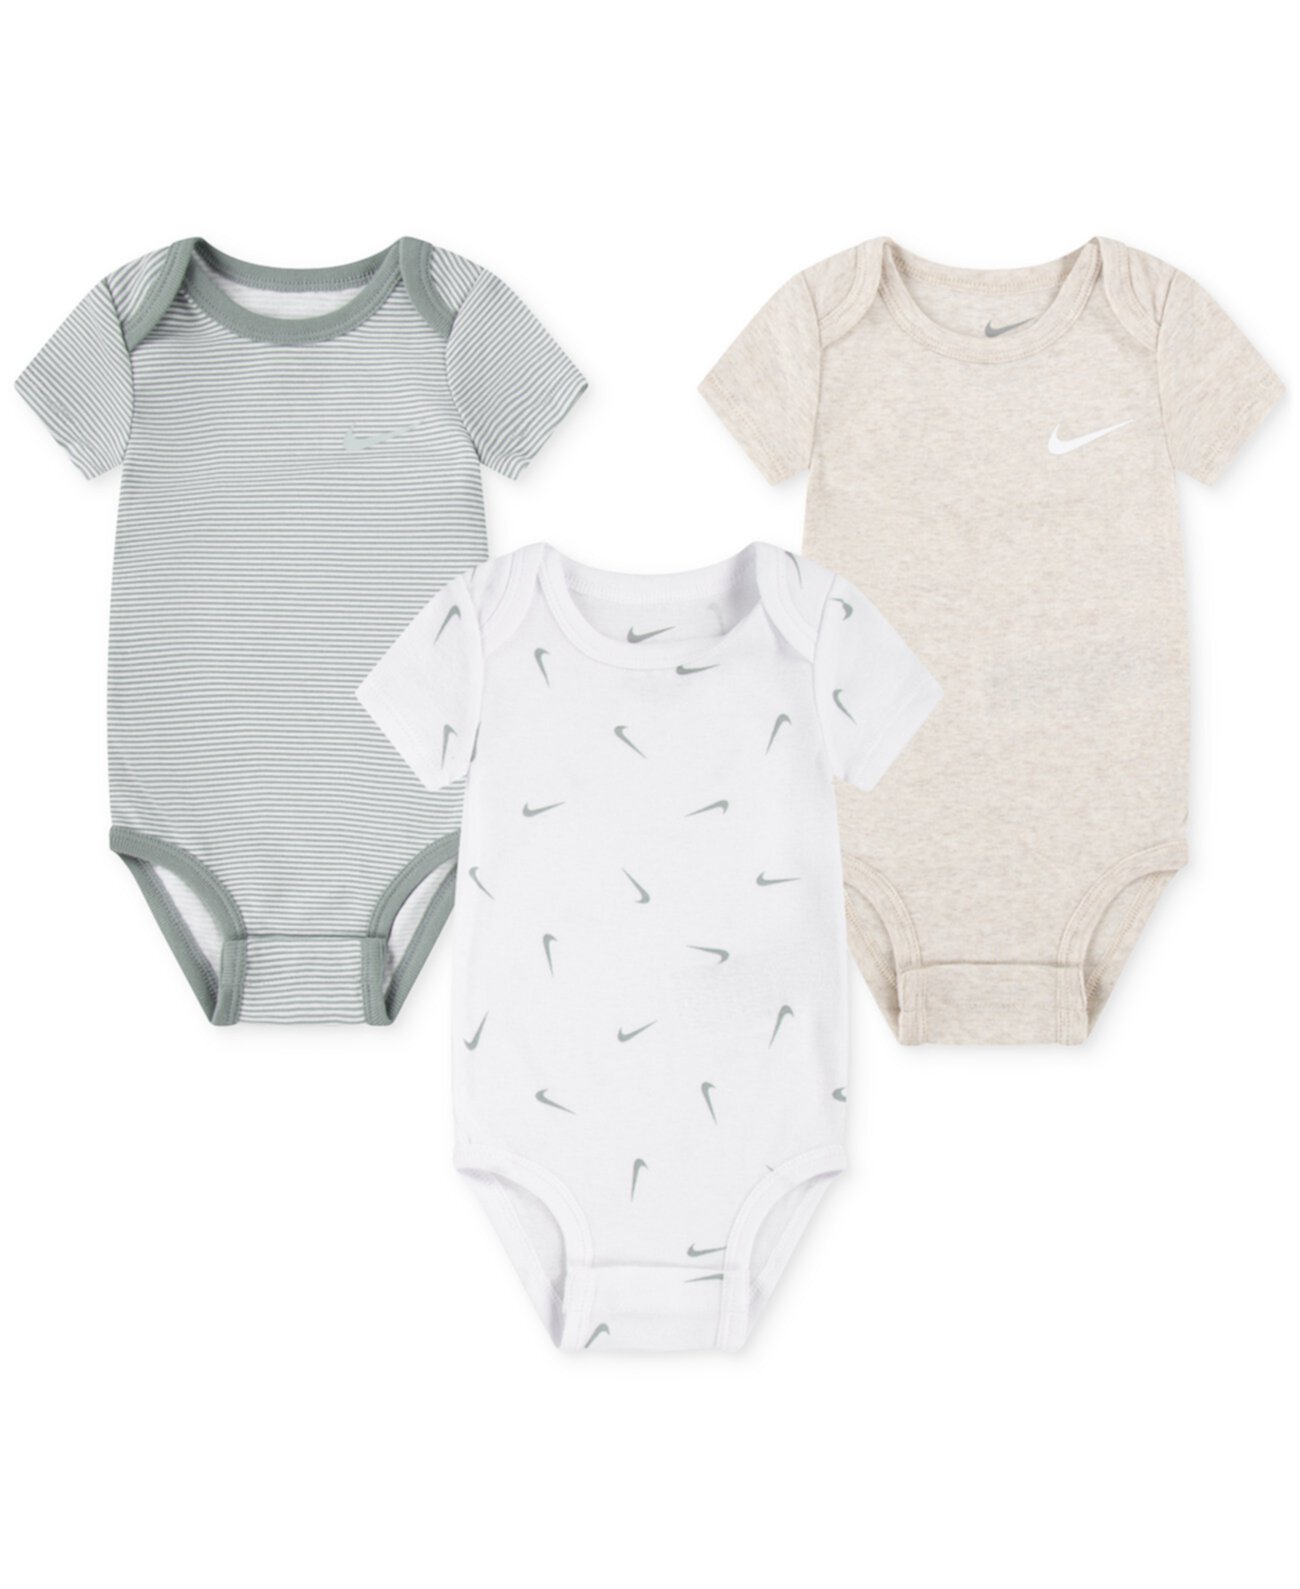 Детские комплекты одежды Nike для мальчиков или девочек Essentials Bodysuits, набор из 3 шт. Nike